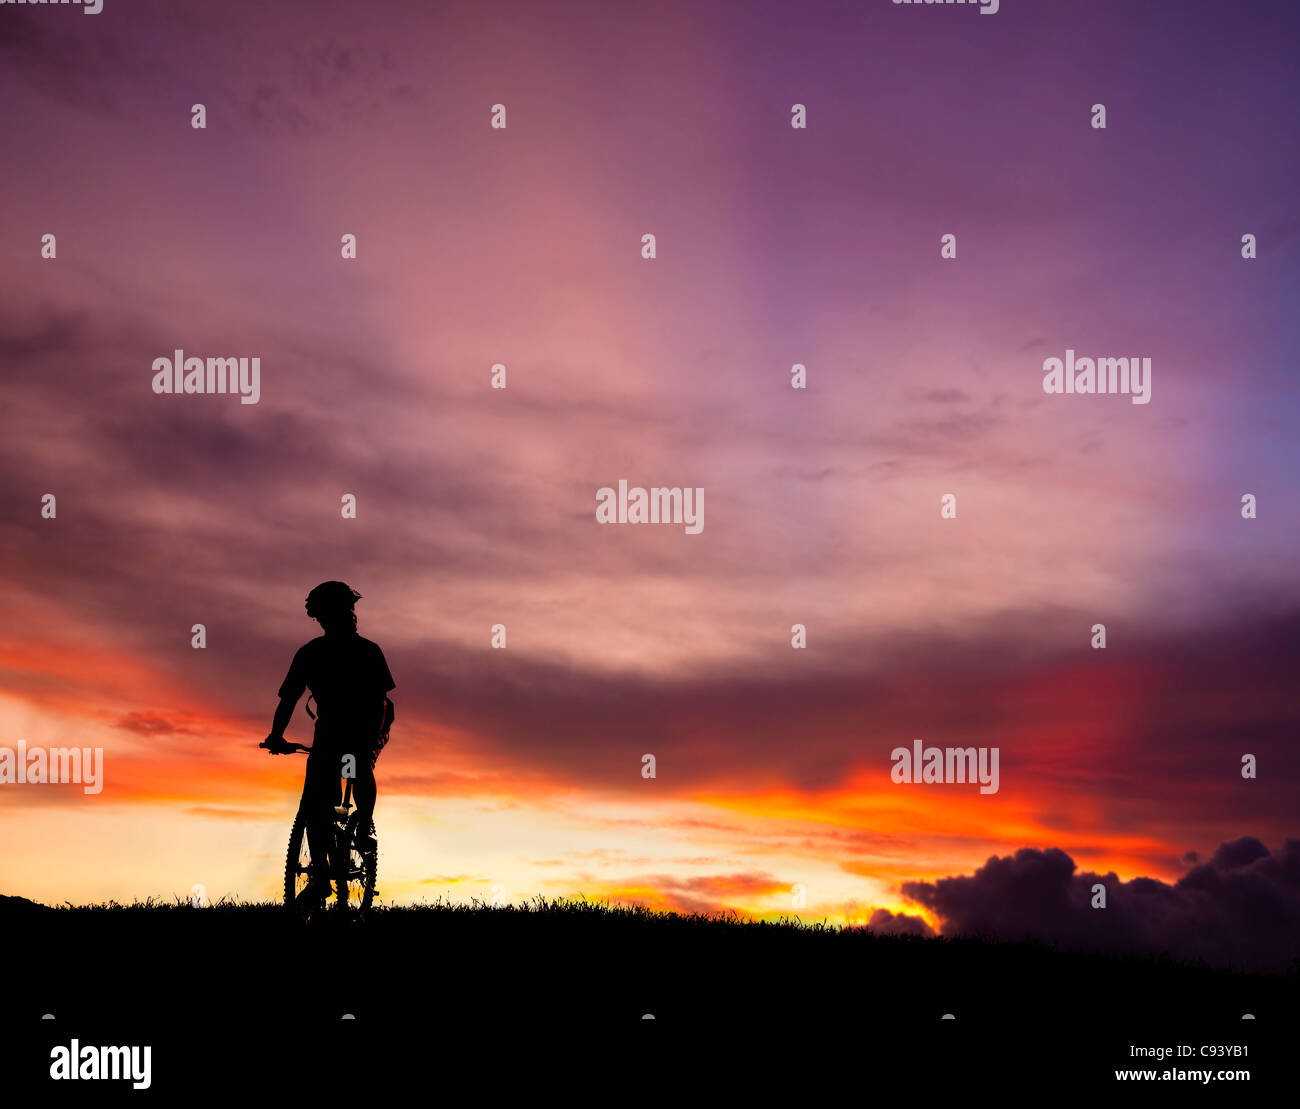 La silhouette di mountain bicycle rider sulla collina con un bellissimo sfondo di sunrise Foto Stock